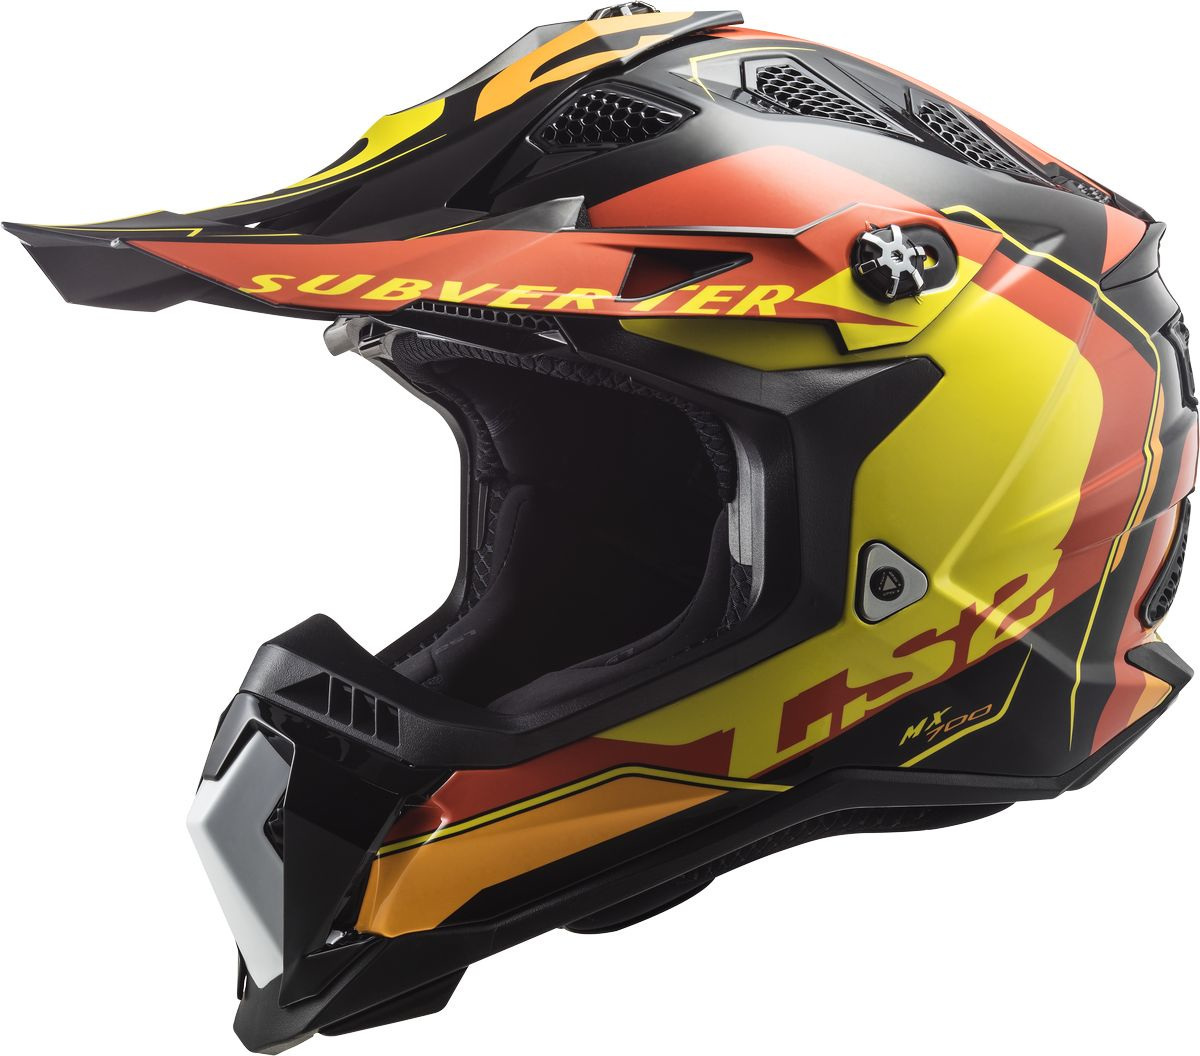 Шлем LS2 MX700 Subverter Evo Arched для мотокросса, черно-желто-красный